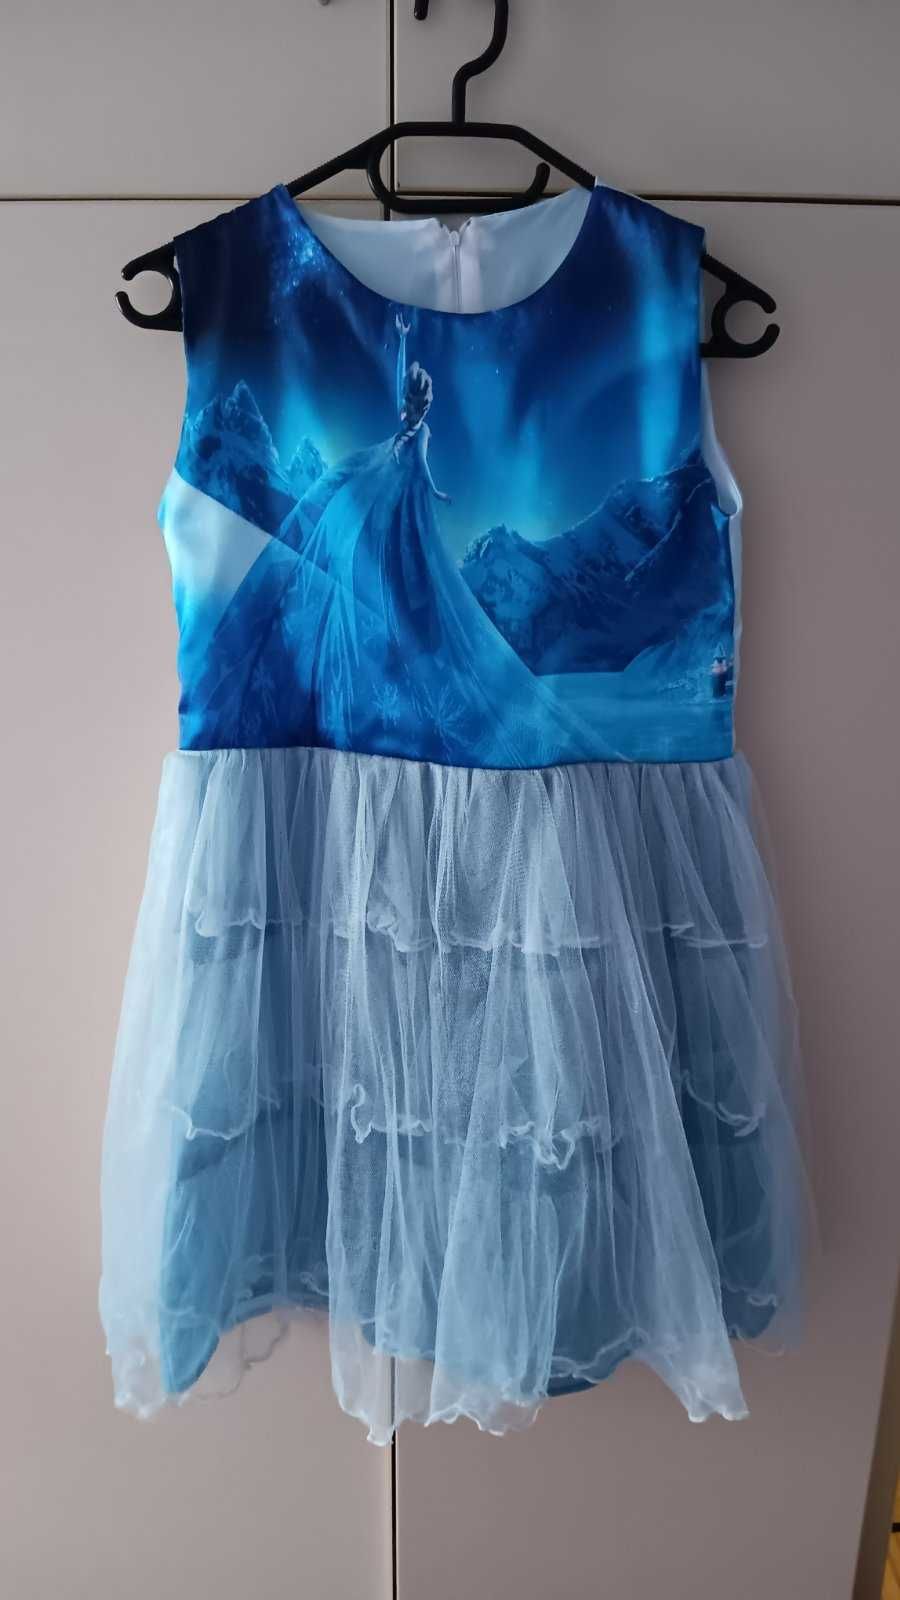 Детска рокля Frozen Елза или Brezee за 7-8 год. дете